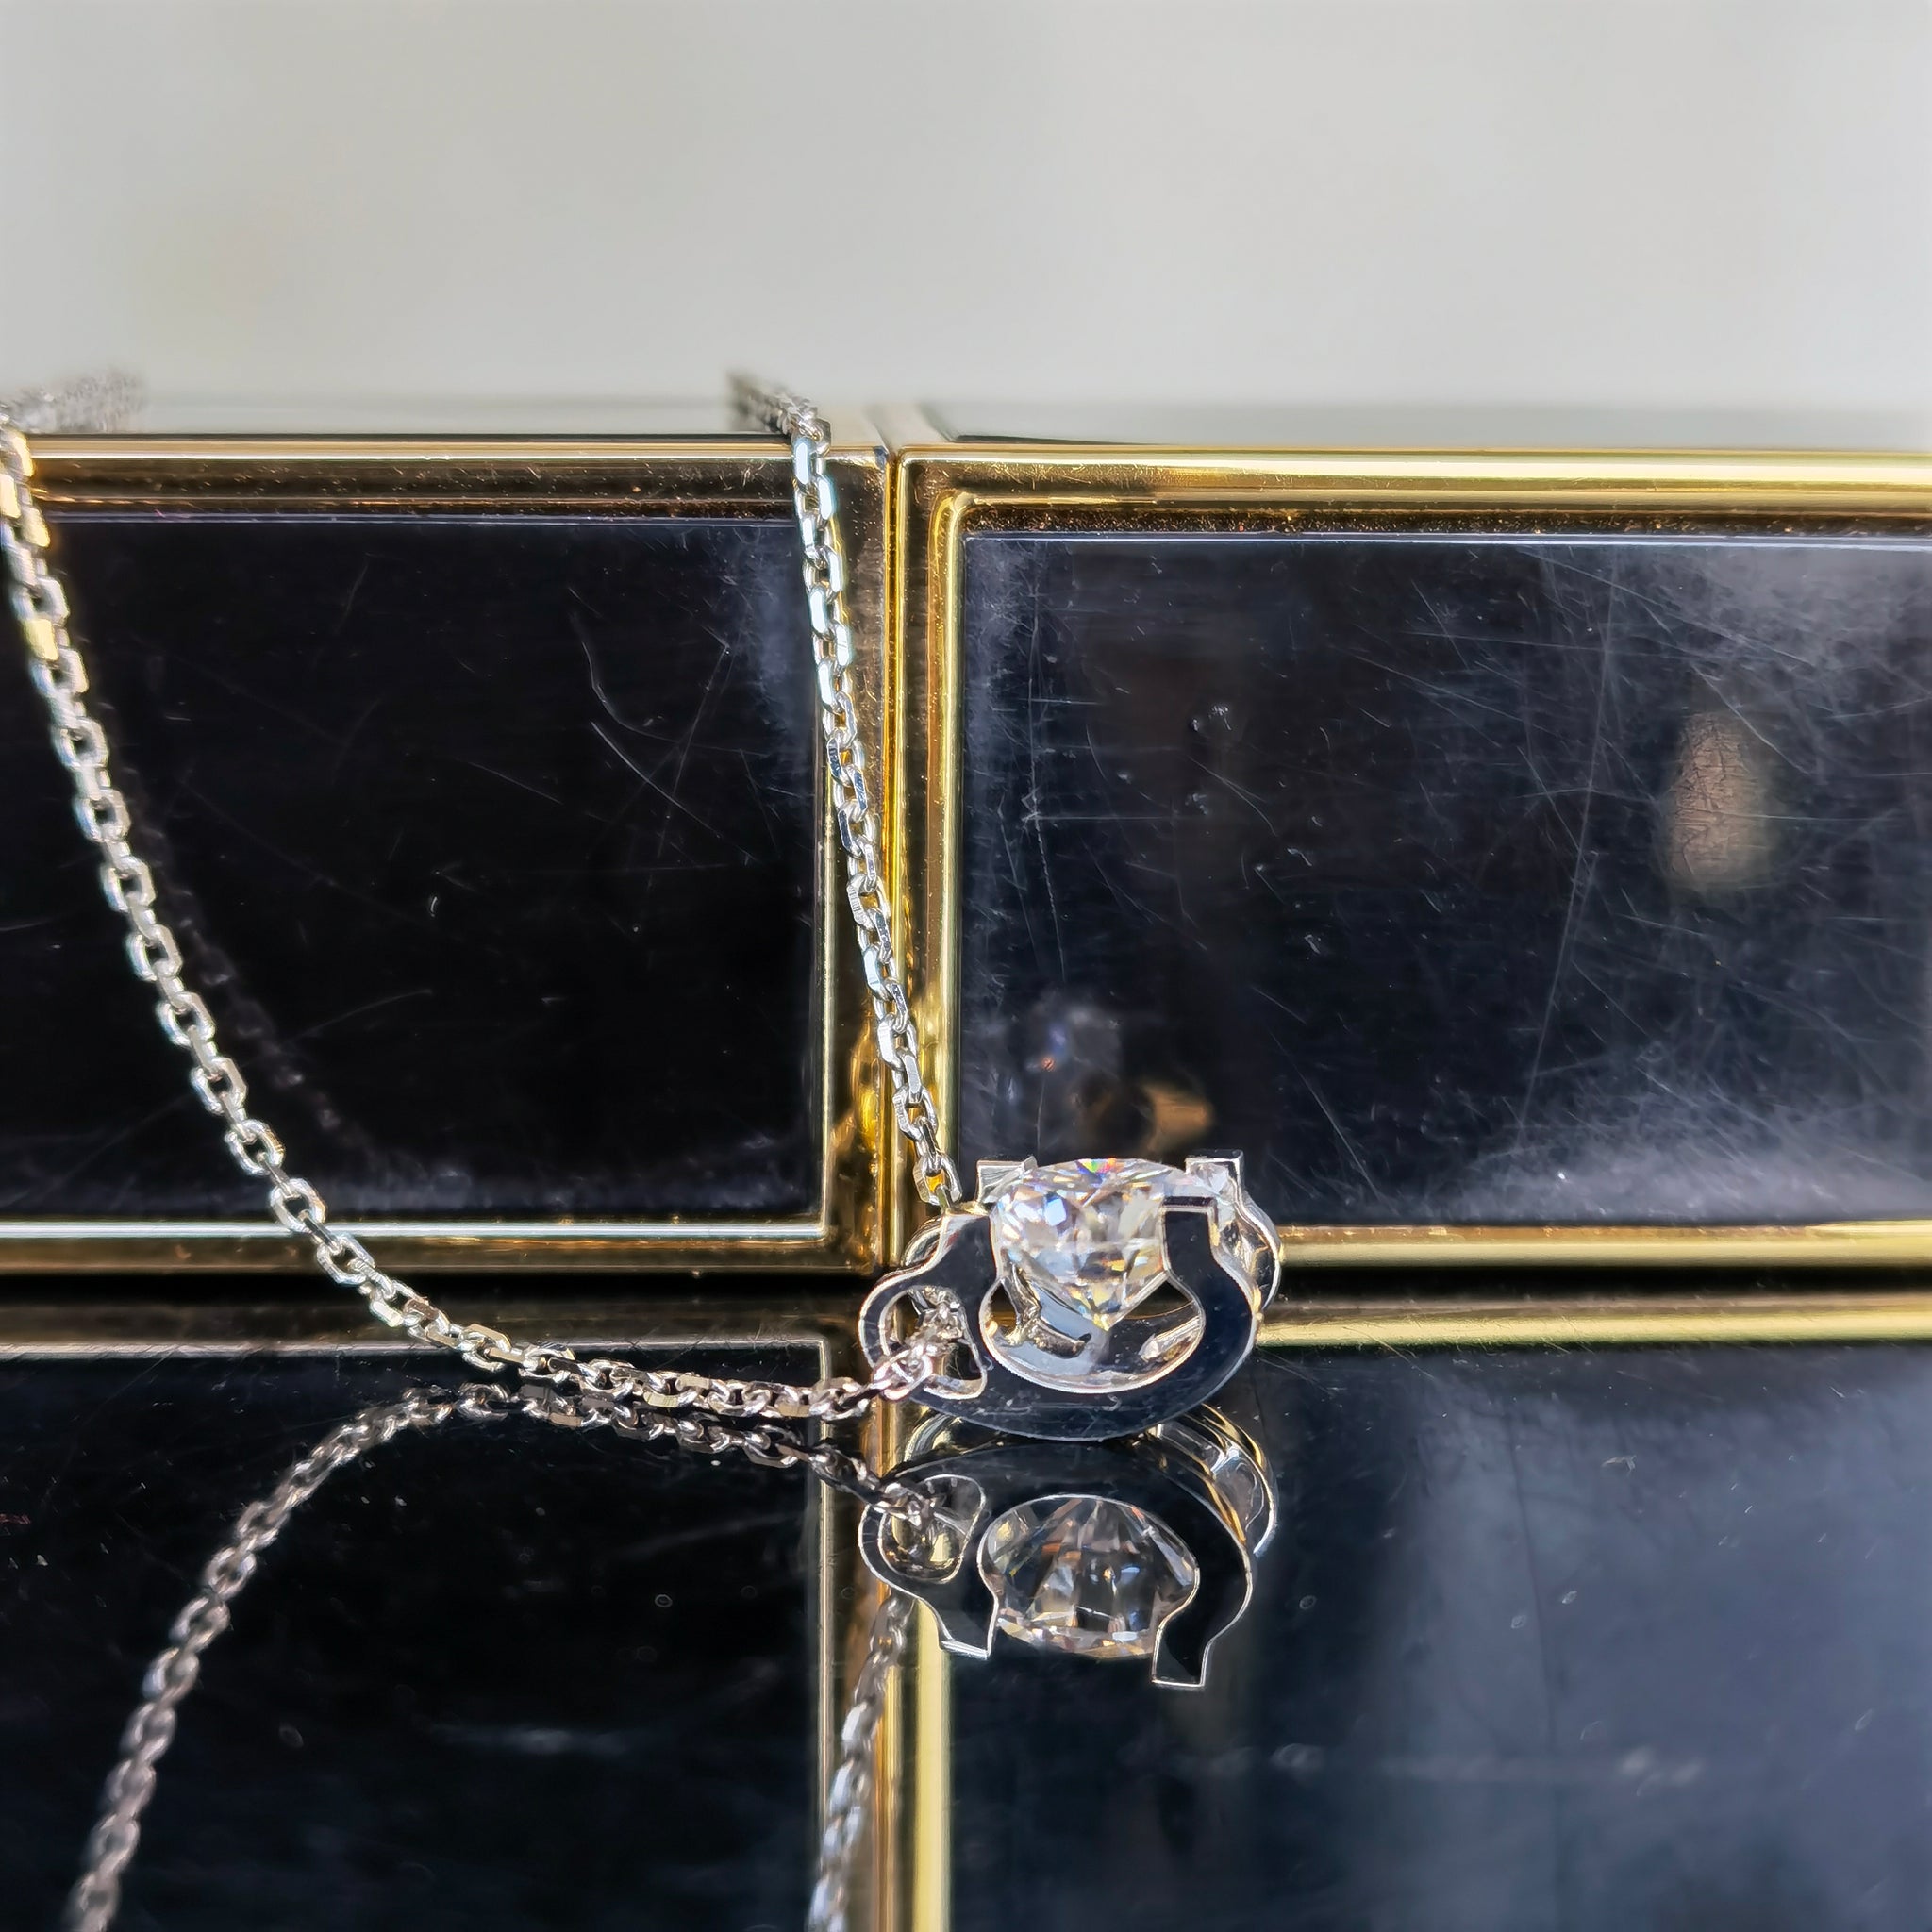 Doveggs premade 18k white gold round moissanite pendant necklace